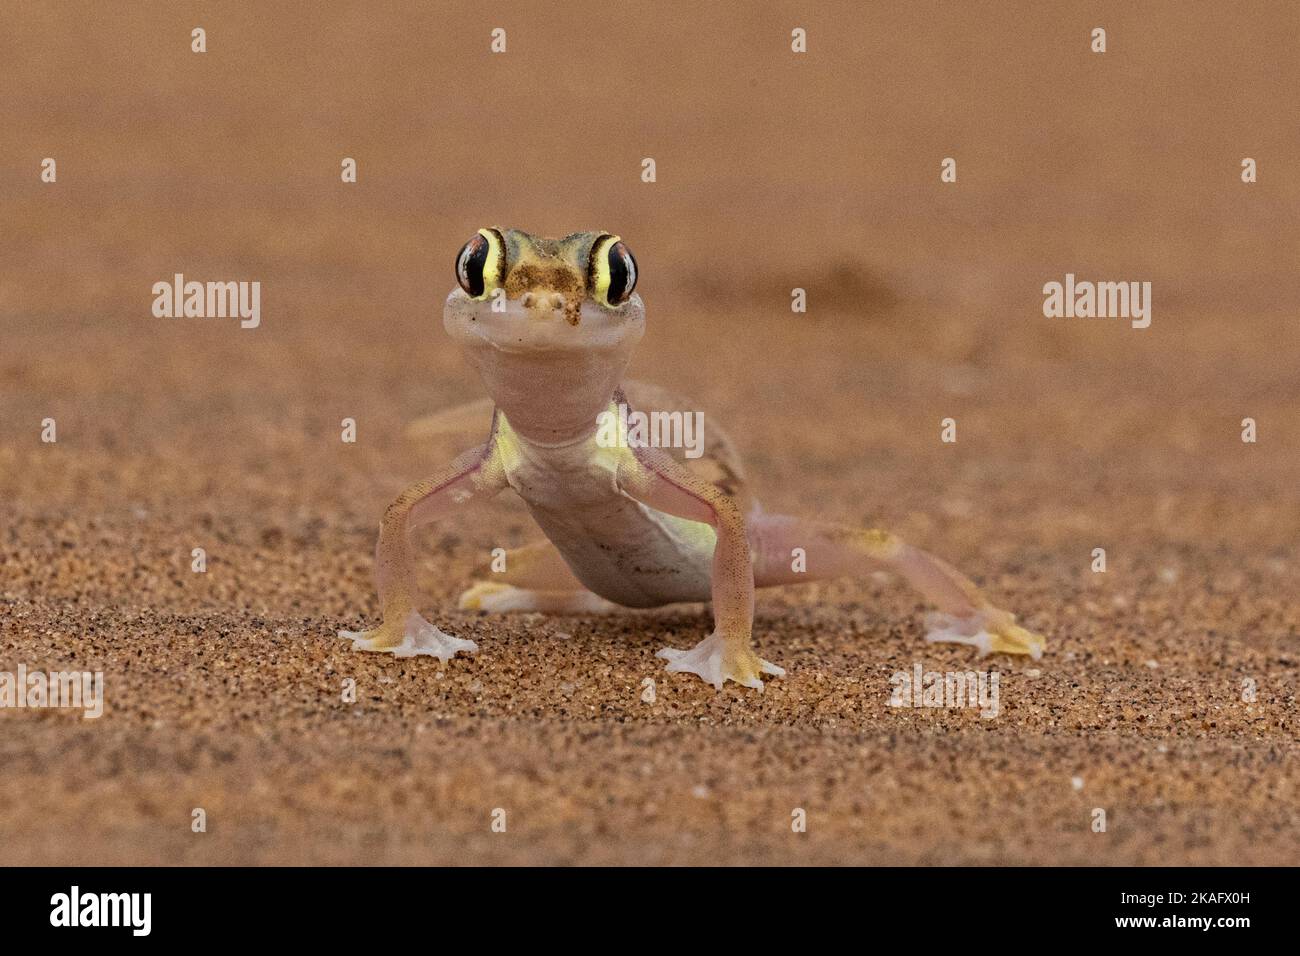 Pachydactylus rangei, le gecko de sable namib ou le gecko namib à pieds sur le web Banque D'Images